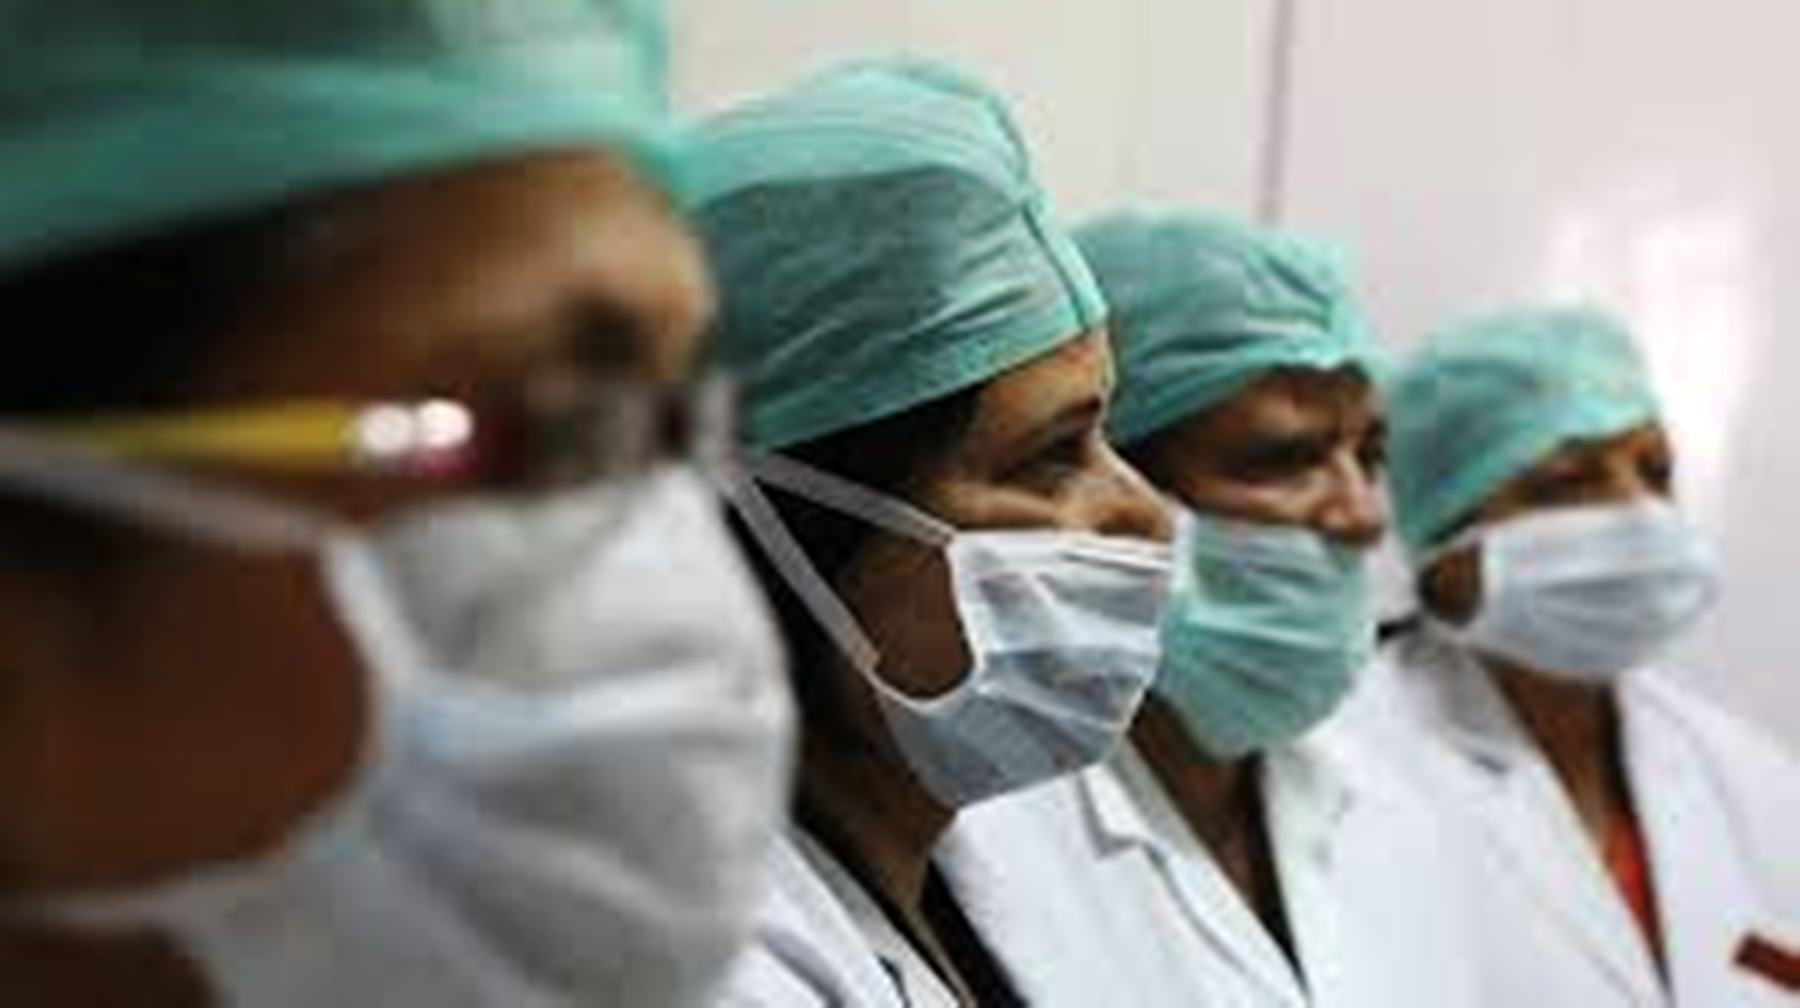 संकट की घड़ी में ड्यूटी न करने वाली फिरोजाबाद की दो महिला चिकित्सकों के विरुद्ध रिपोर्ट दर्ज